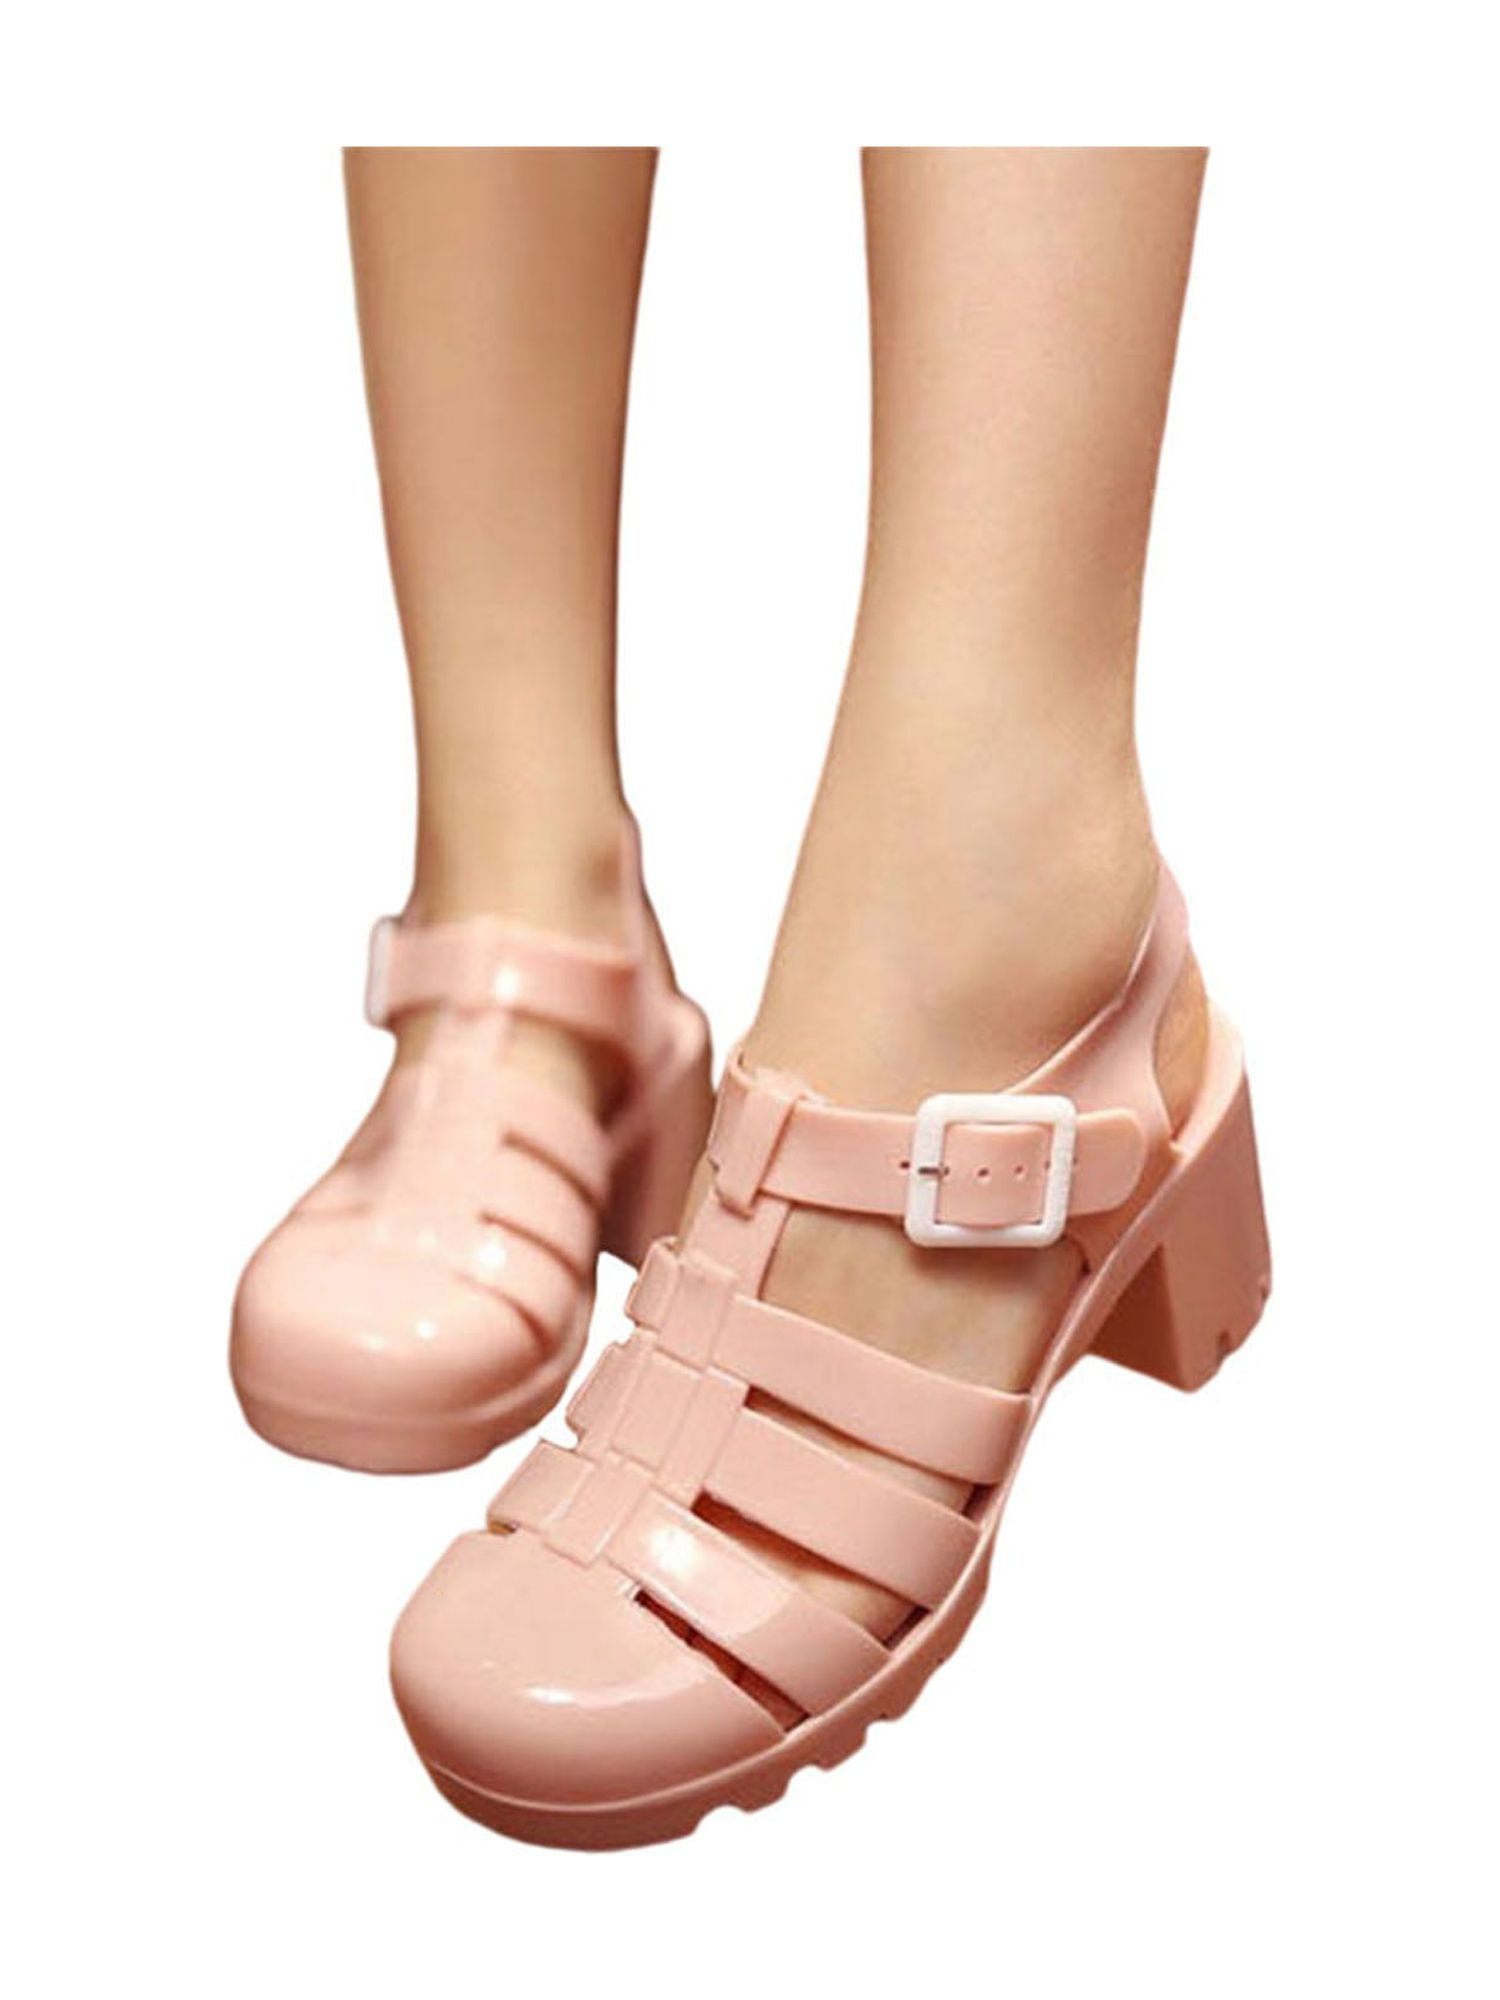 Audeban Women's Jelly Sandals T-Strap Slingback Wedge Platform Clear Summer  Beach Rain Shoes - Walmart.com